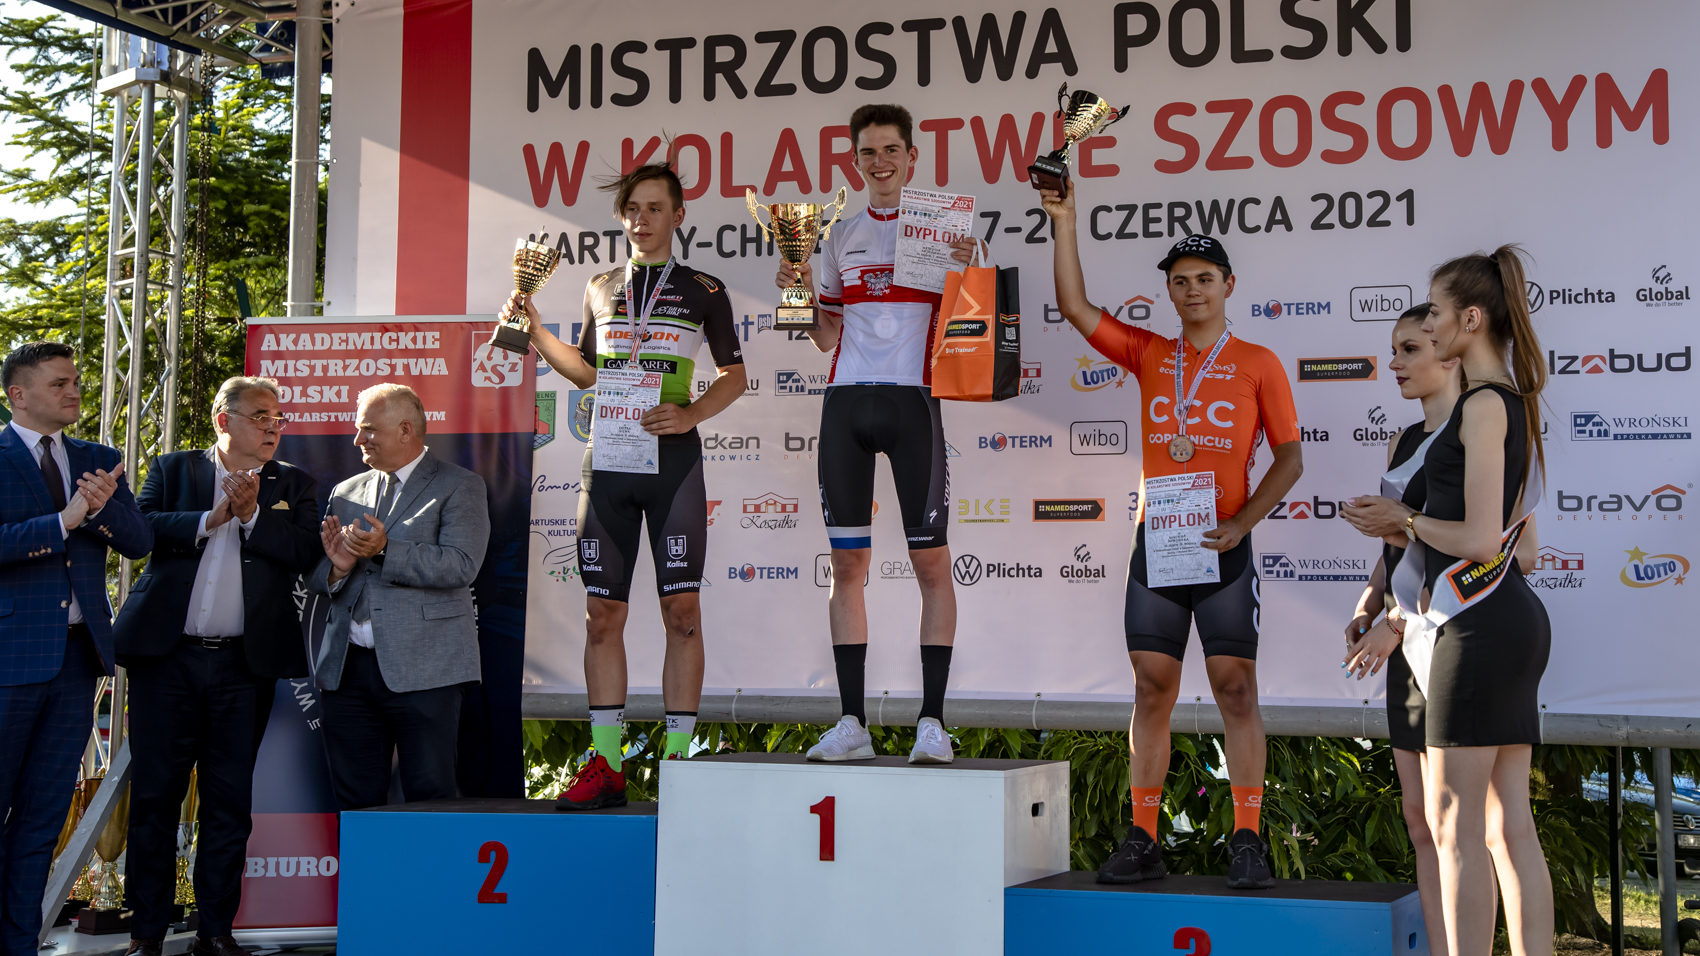 Mistrzostwa Polski 2021. Mateusz Gajdulewicz złotym juniorem w jeździe na czas